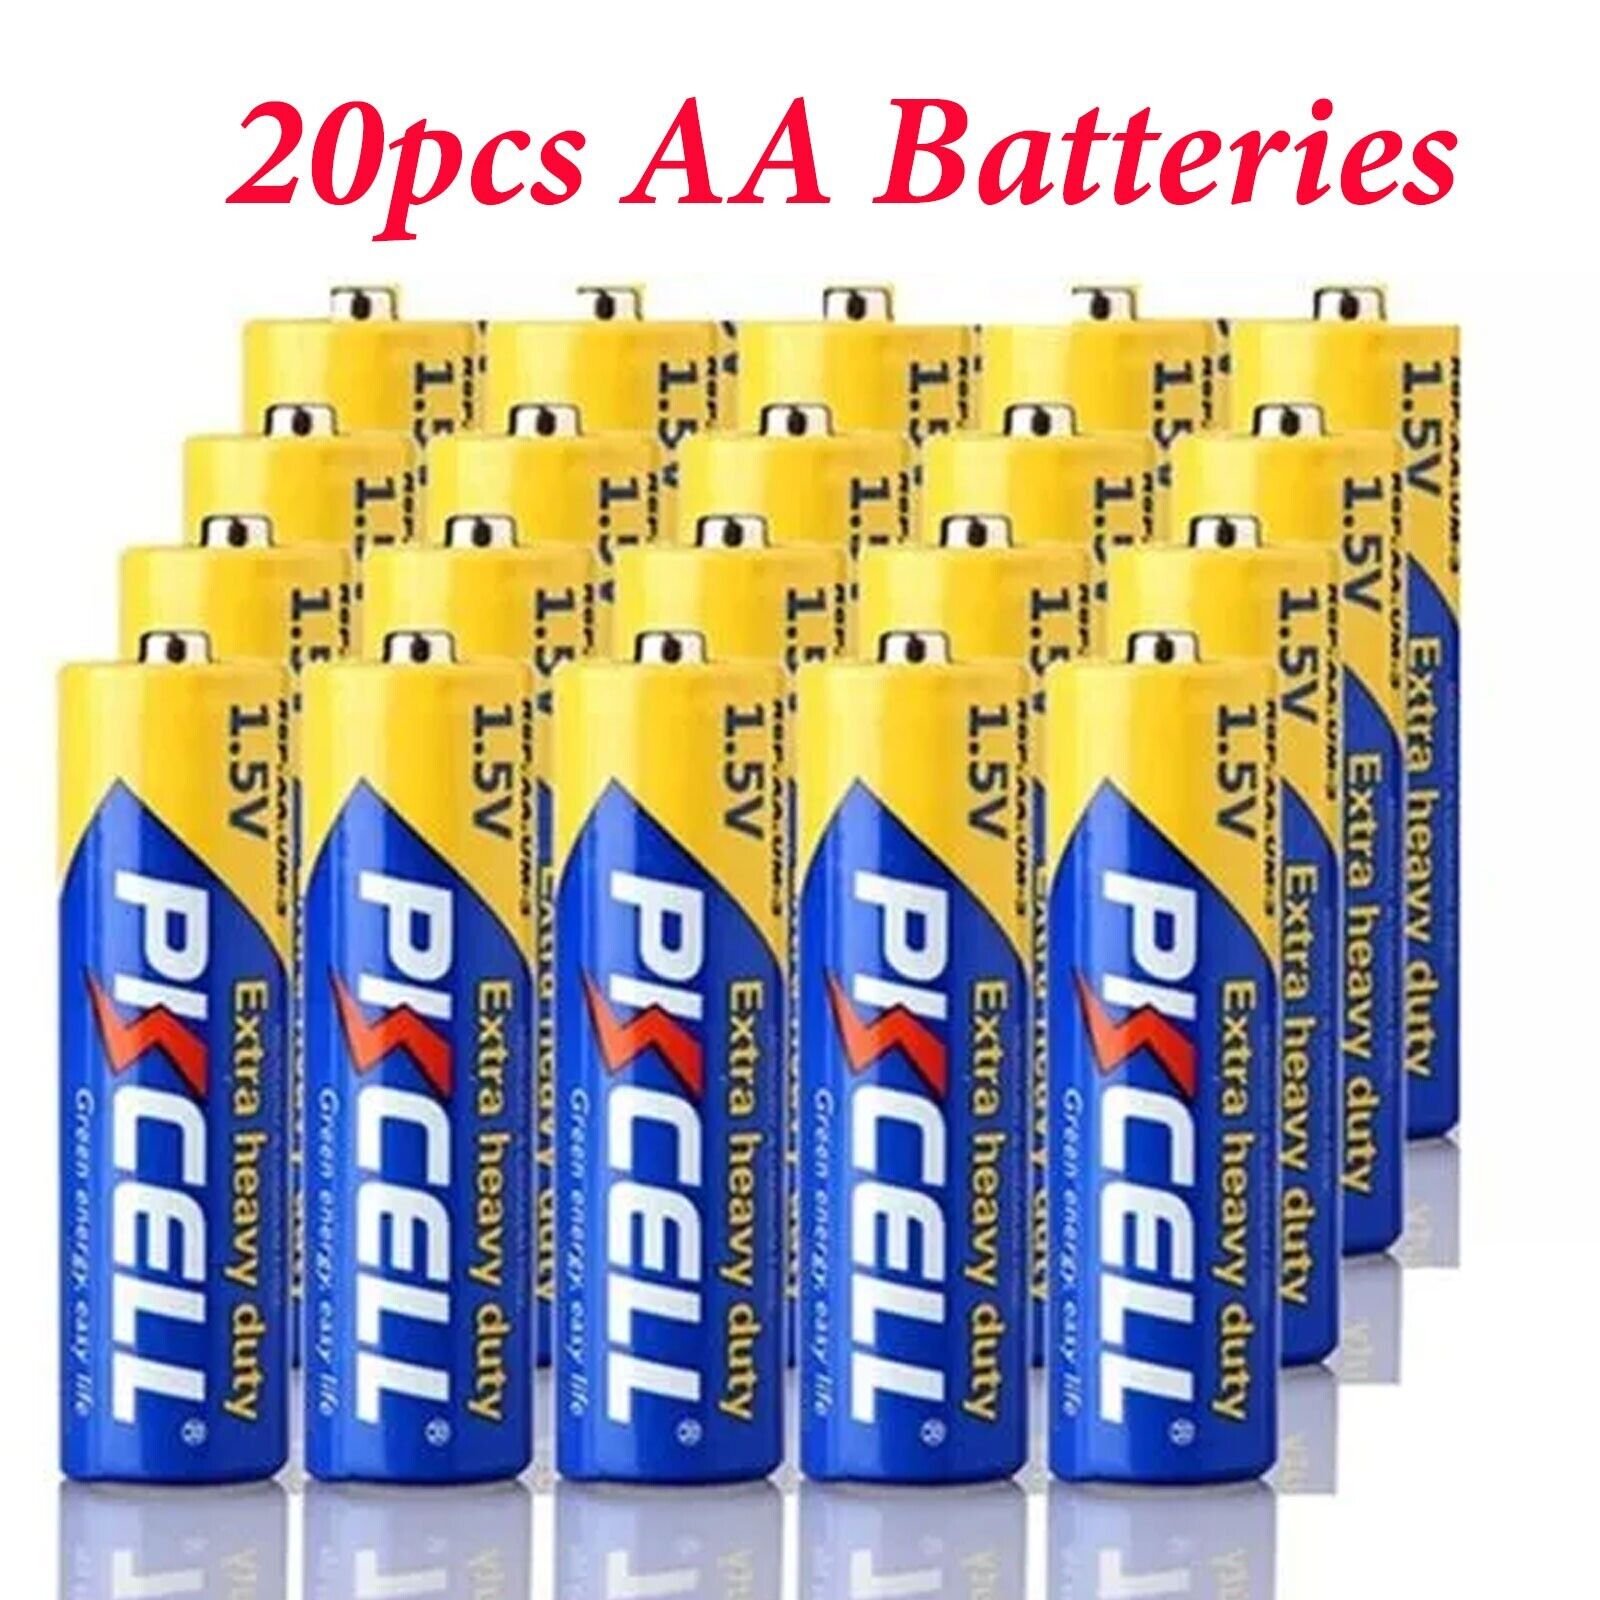 20Pcs AA Batteries 1.5V Double A Cell E91 R6P PC1500 Carbon-Zinc for TV Remote